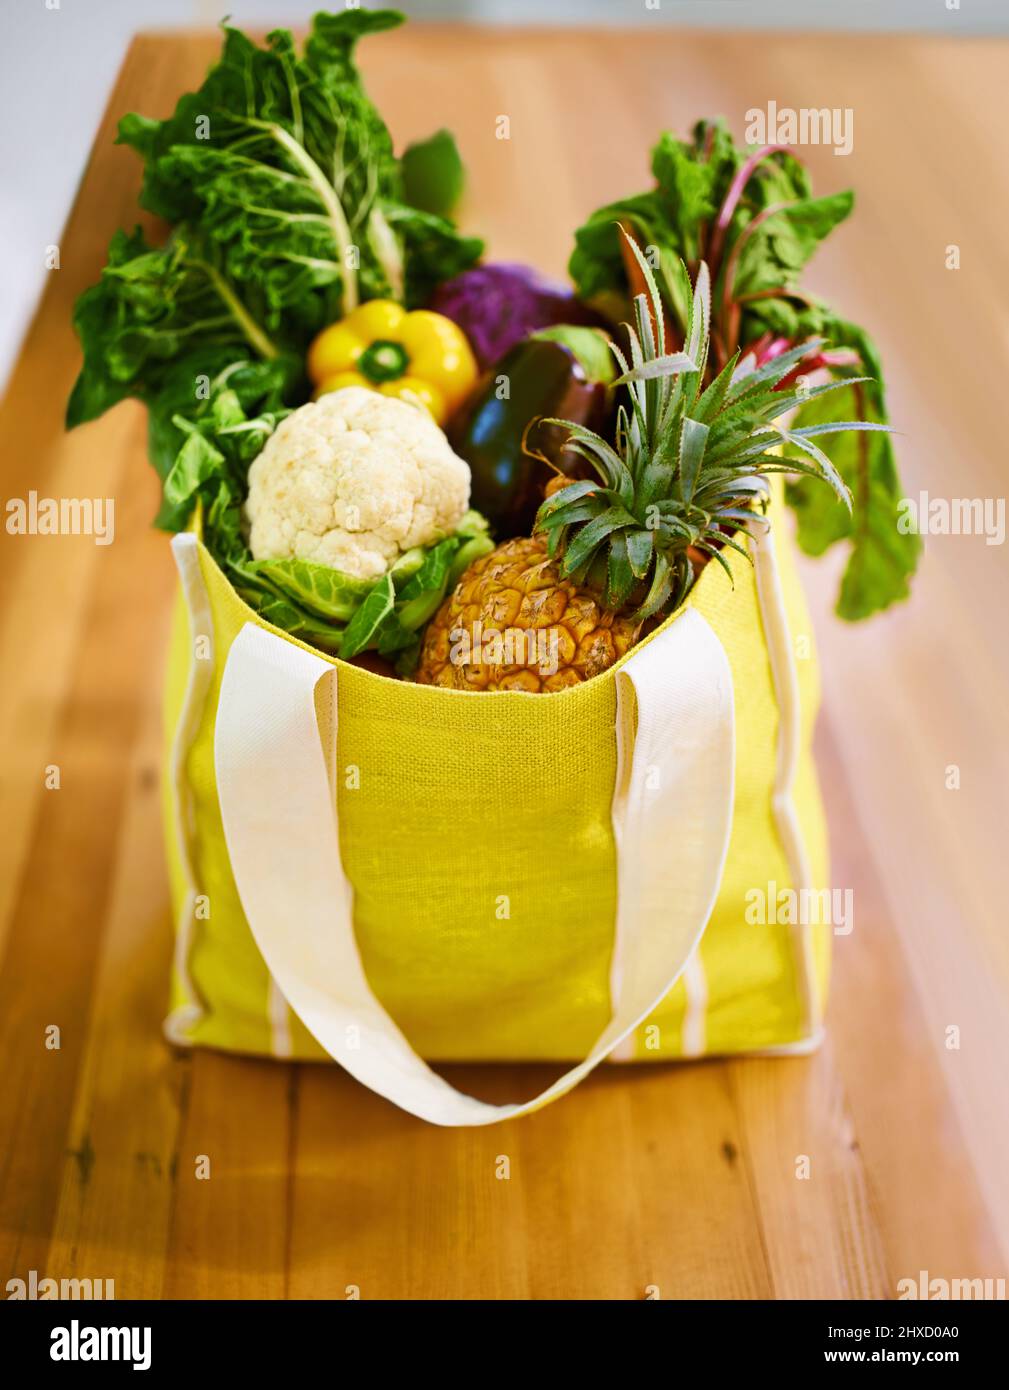 Ich habe eine Tüte voller Güte bekommen. Aufnahme einer Auswahl an Obst und Gemüse in einer Einkaufstasche. Stockfoto